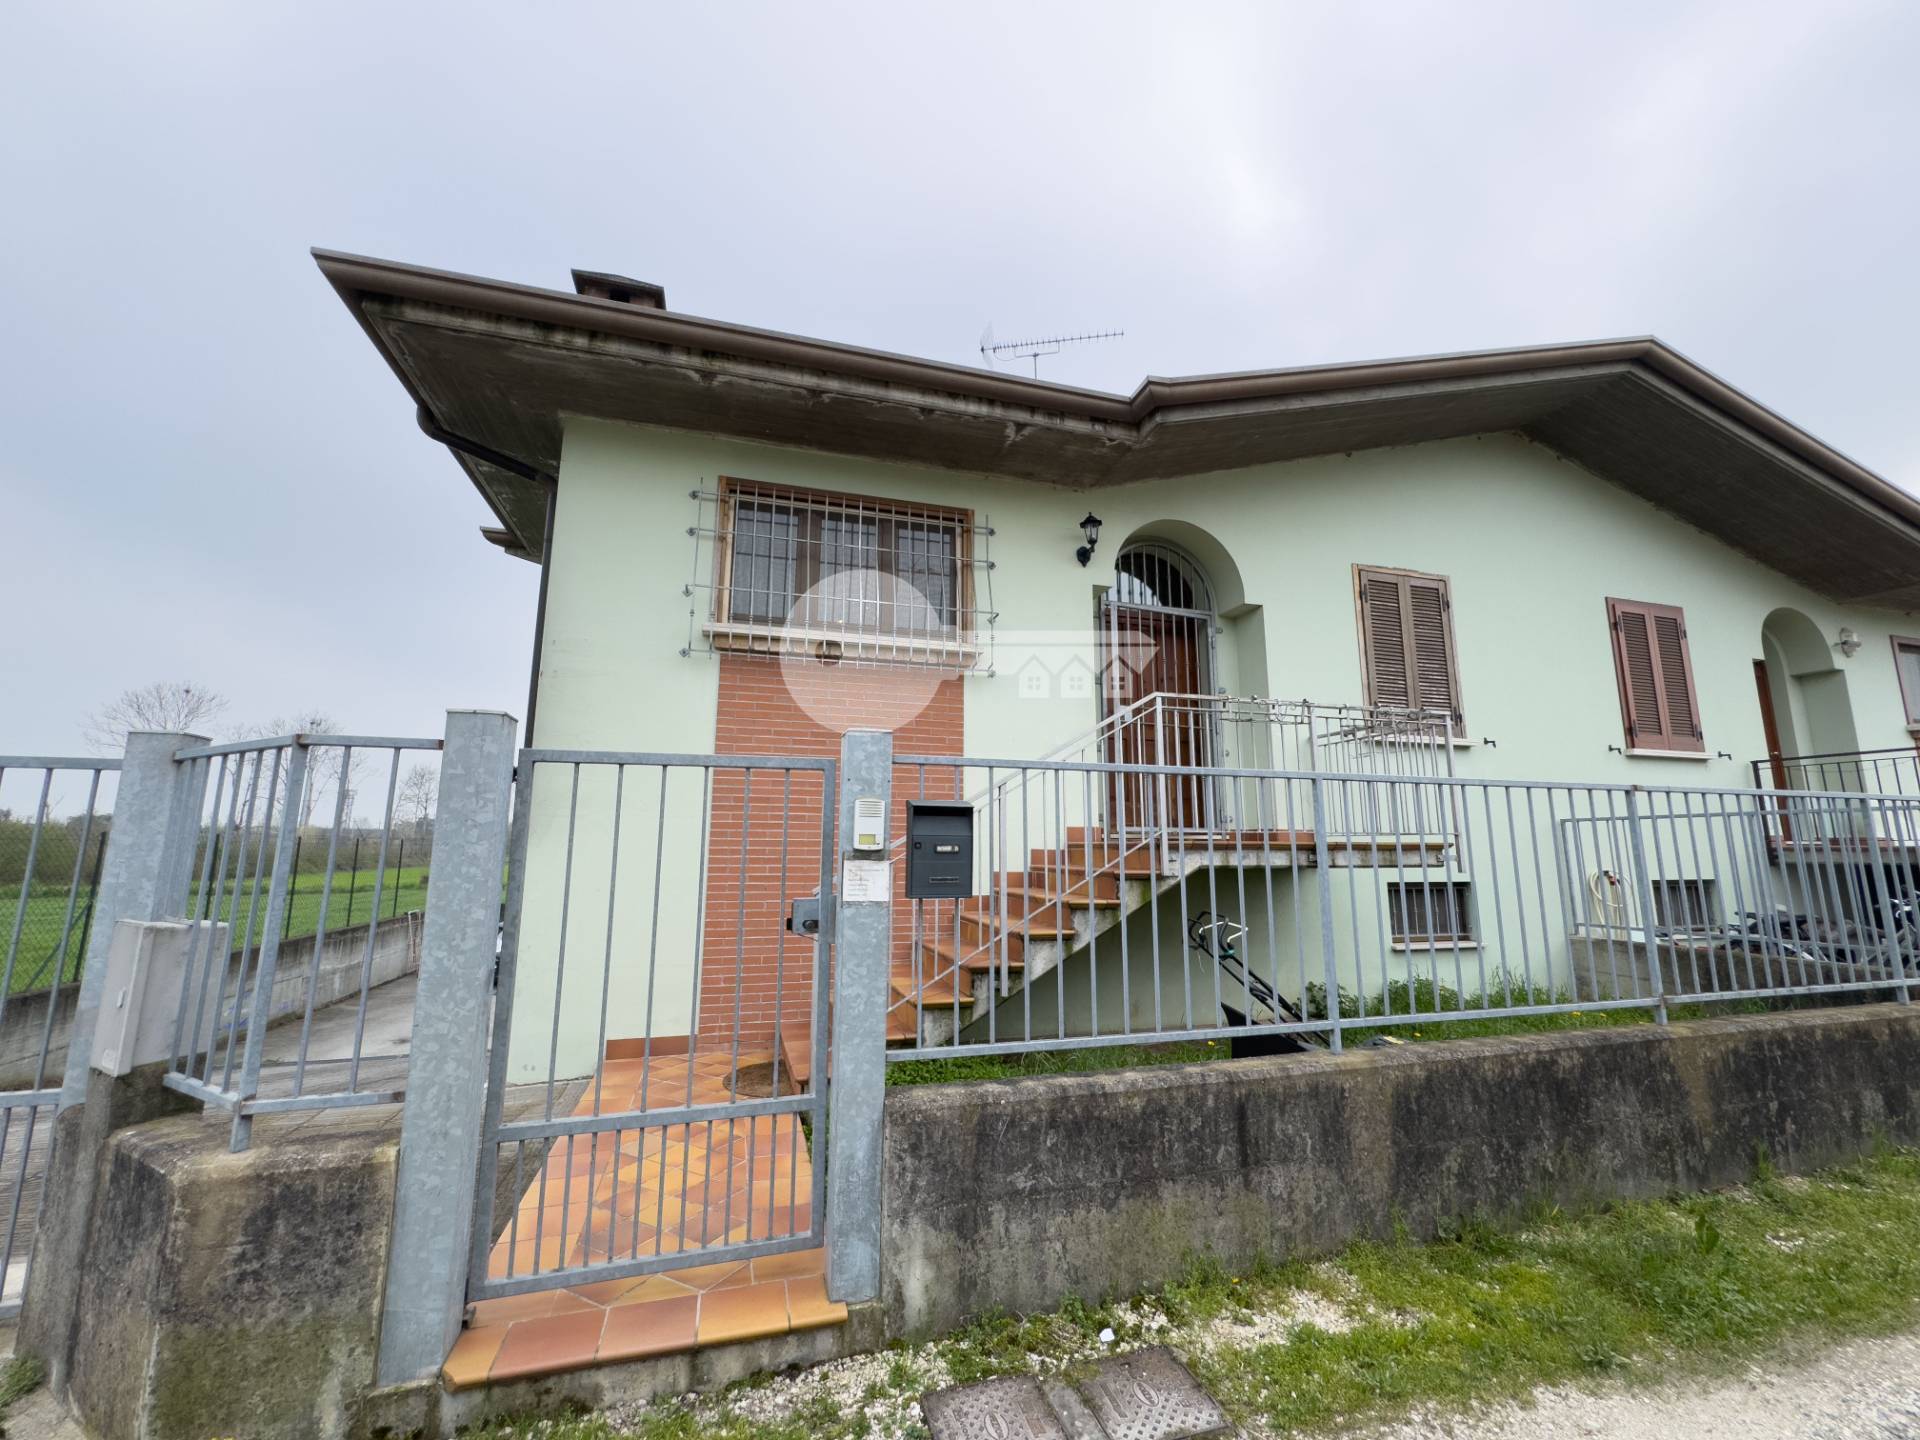 Villa Bifamiliare in vendita a Fiesse, 4 locali, prezzo € 165.000 | PortaleAgenzieImmobiliari.it